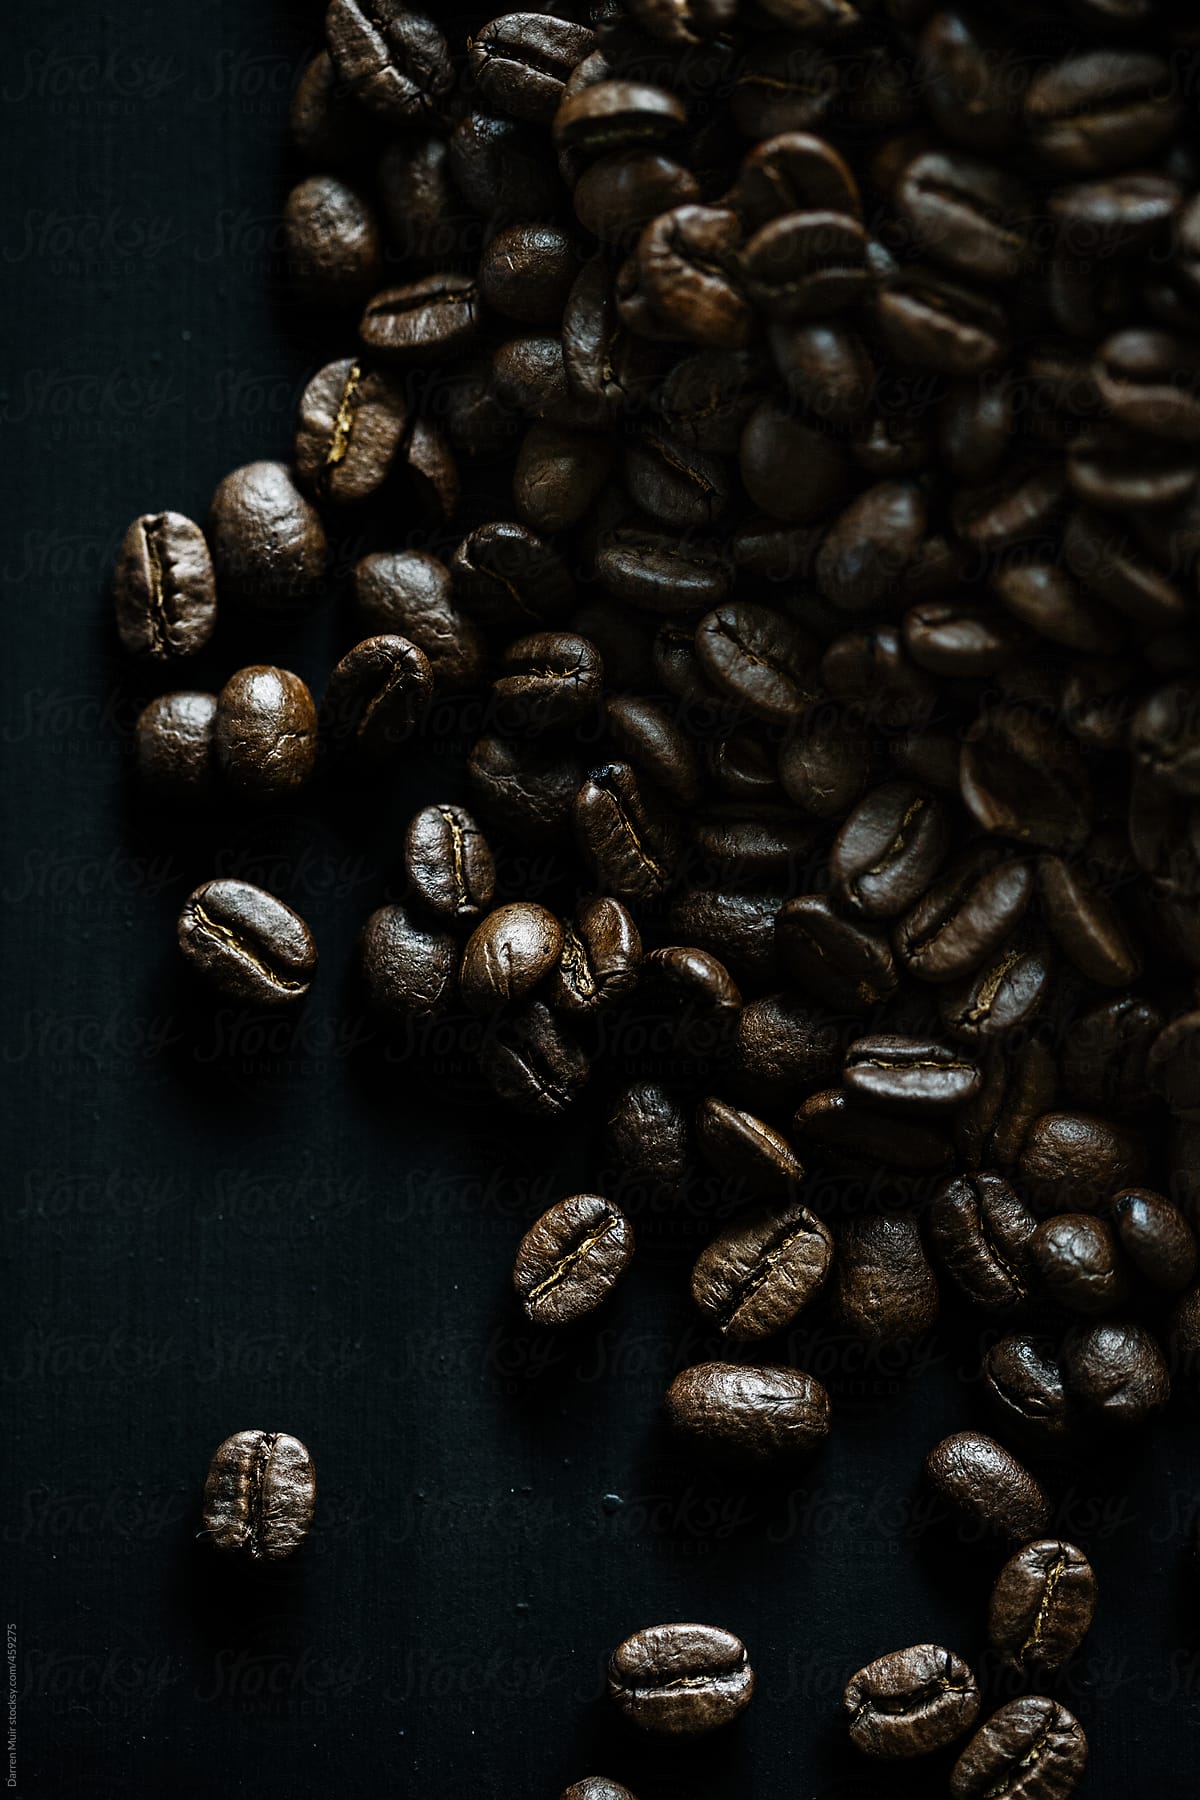 the coffee bean